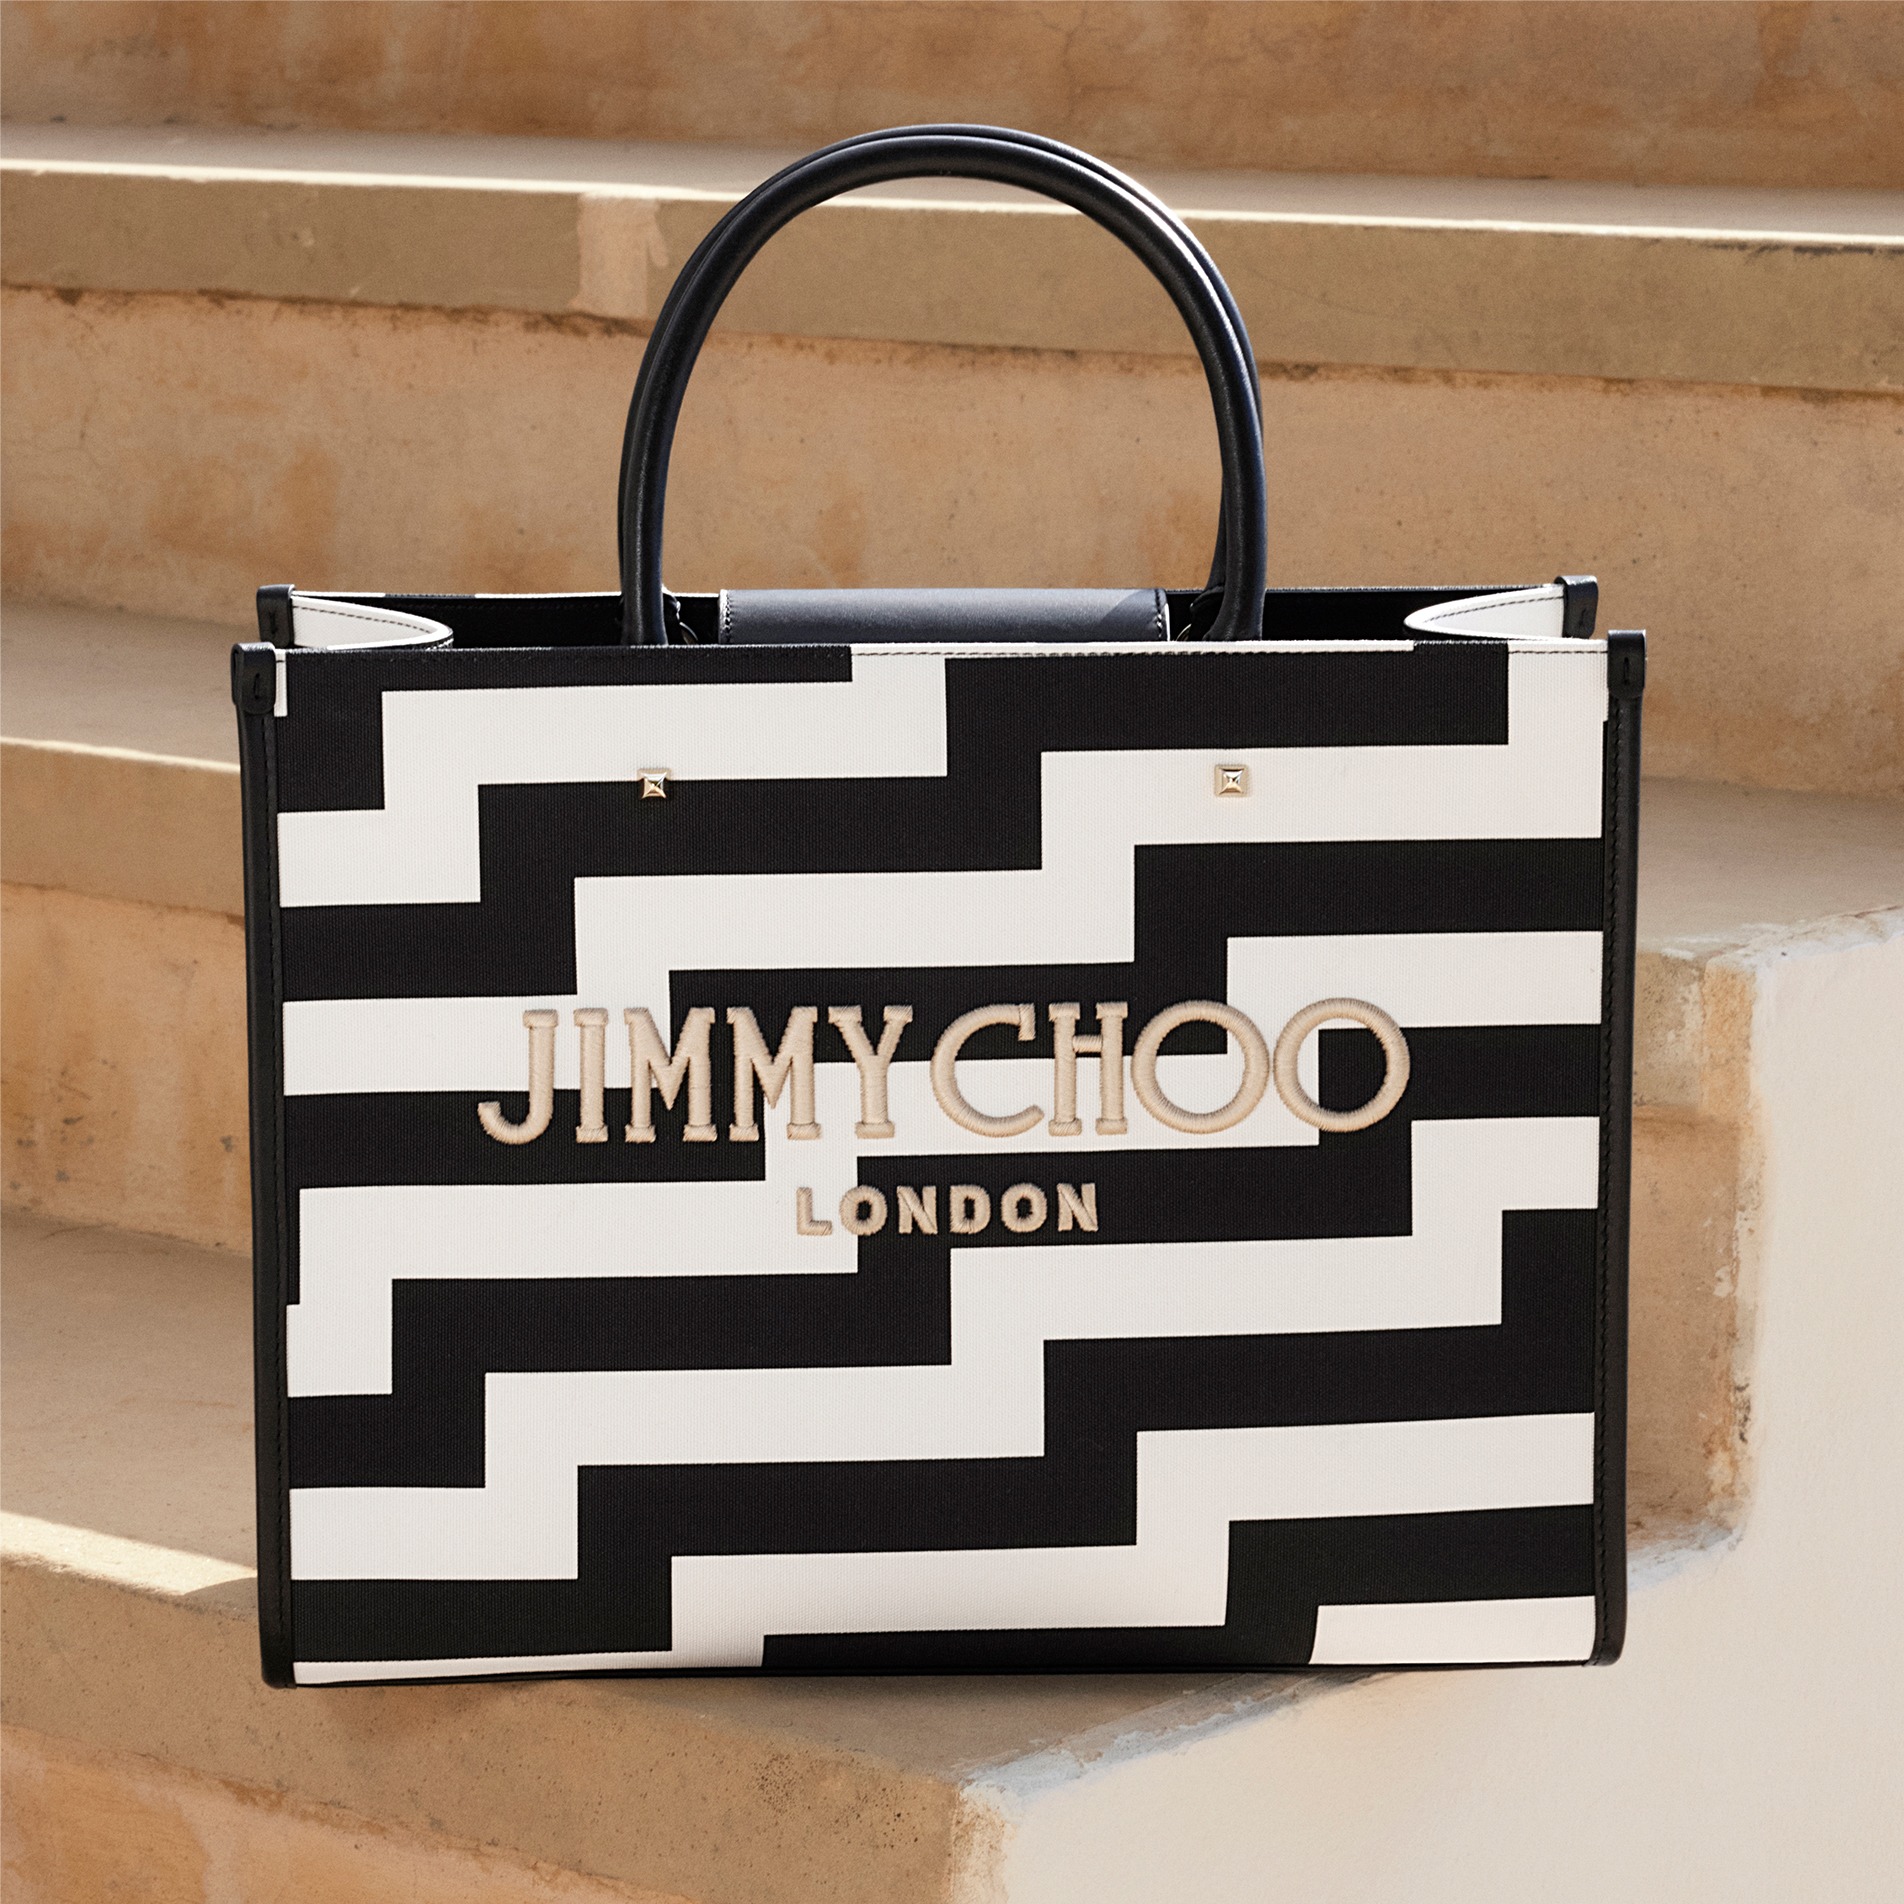 Jimmy Choo Bags for Women - Shop on FARFETCH